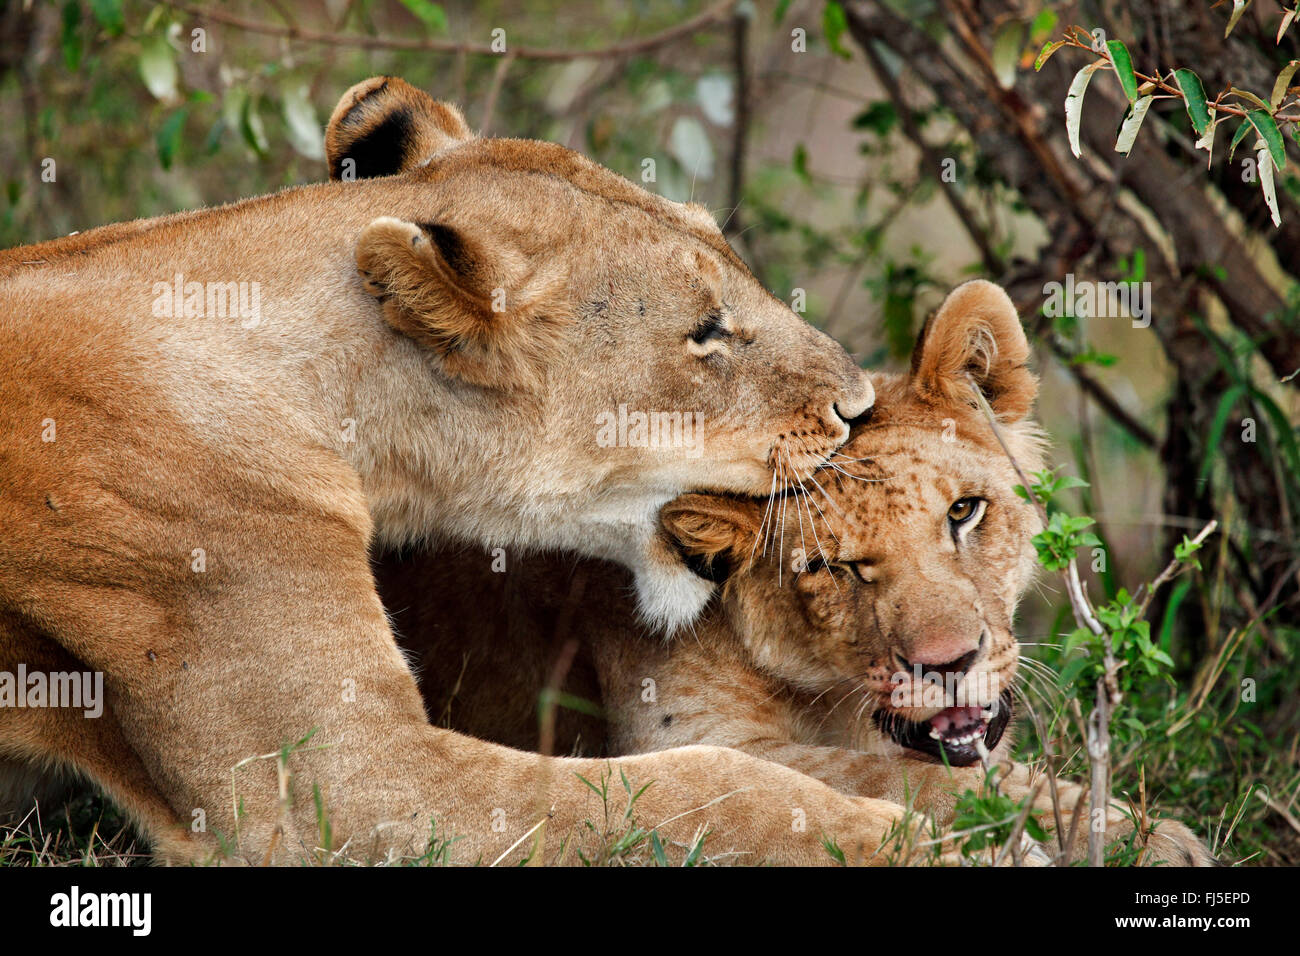 Lion (Panthera leo), lionne mord un enfant tendrement, Kenya, Masai Mara National Park Banque D'Images